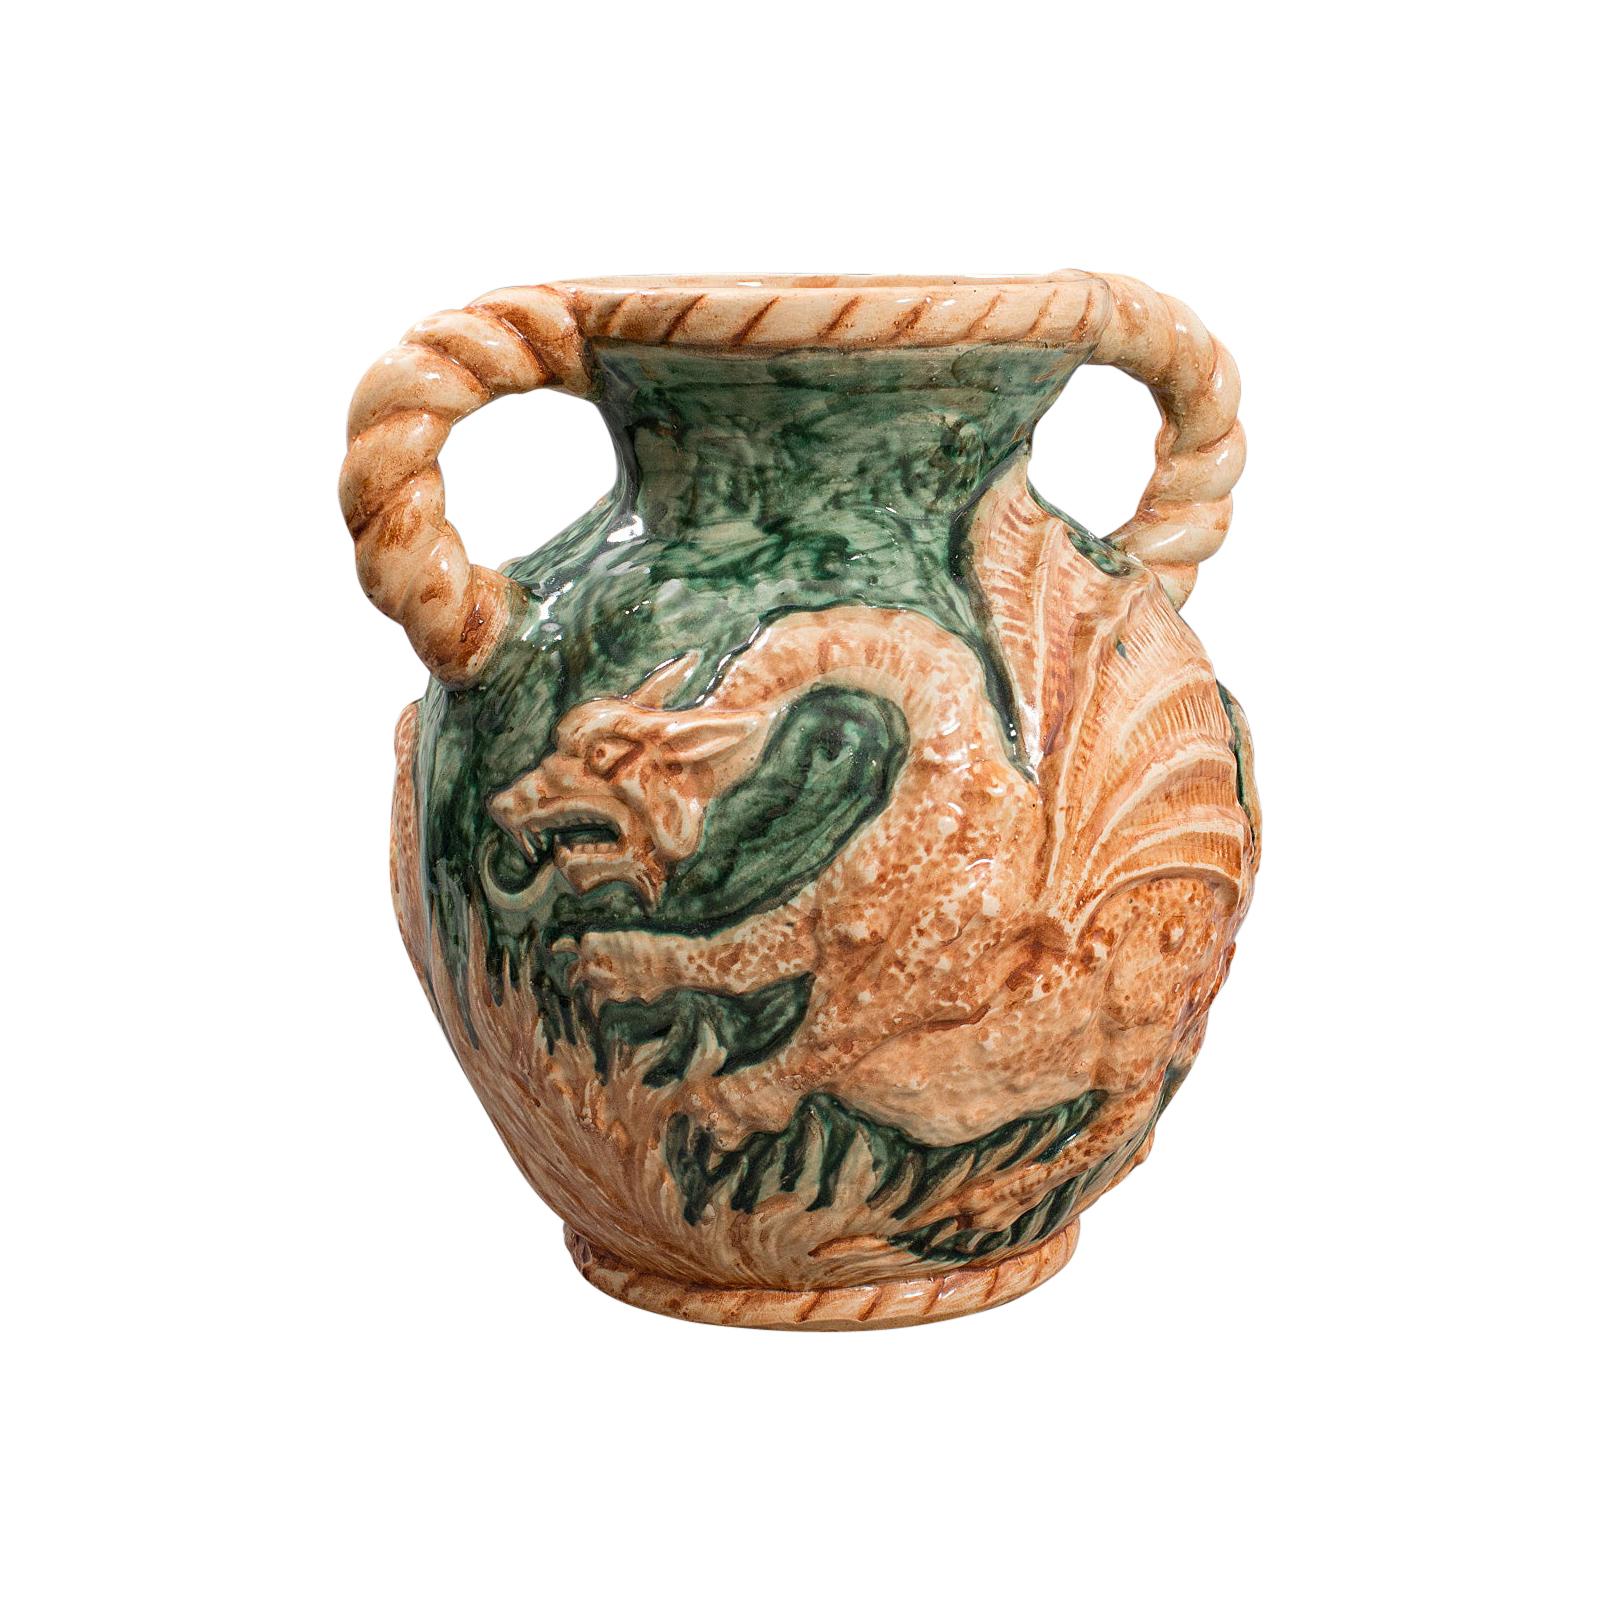 Antike dekorative Vase, kontinental, Keramik, Balusterurne, Drache, viktorianisch